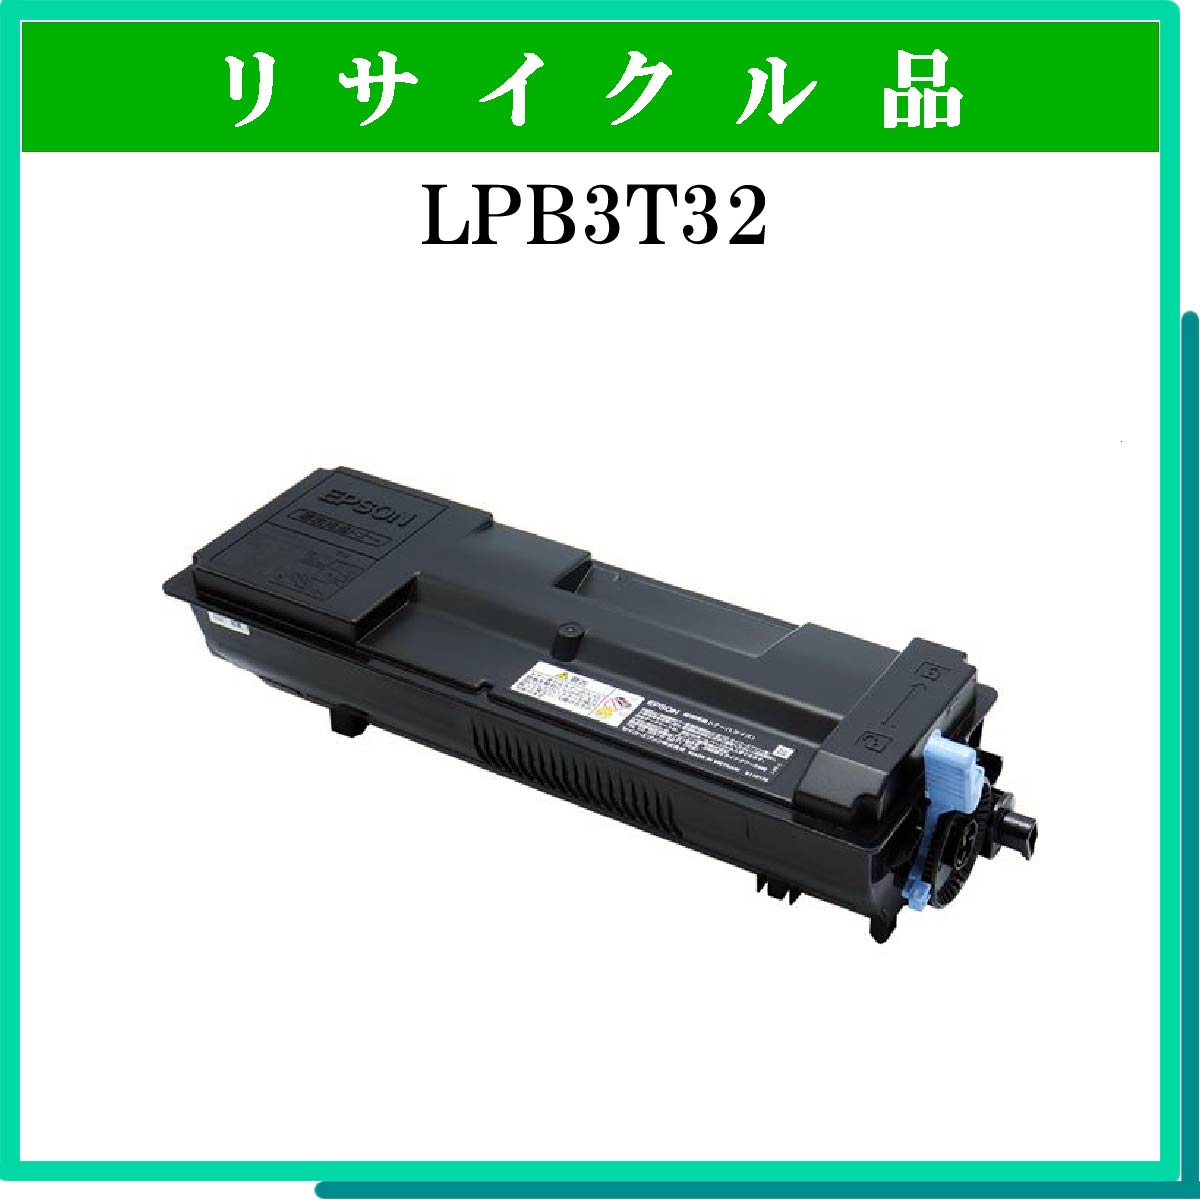 LPB3T32